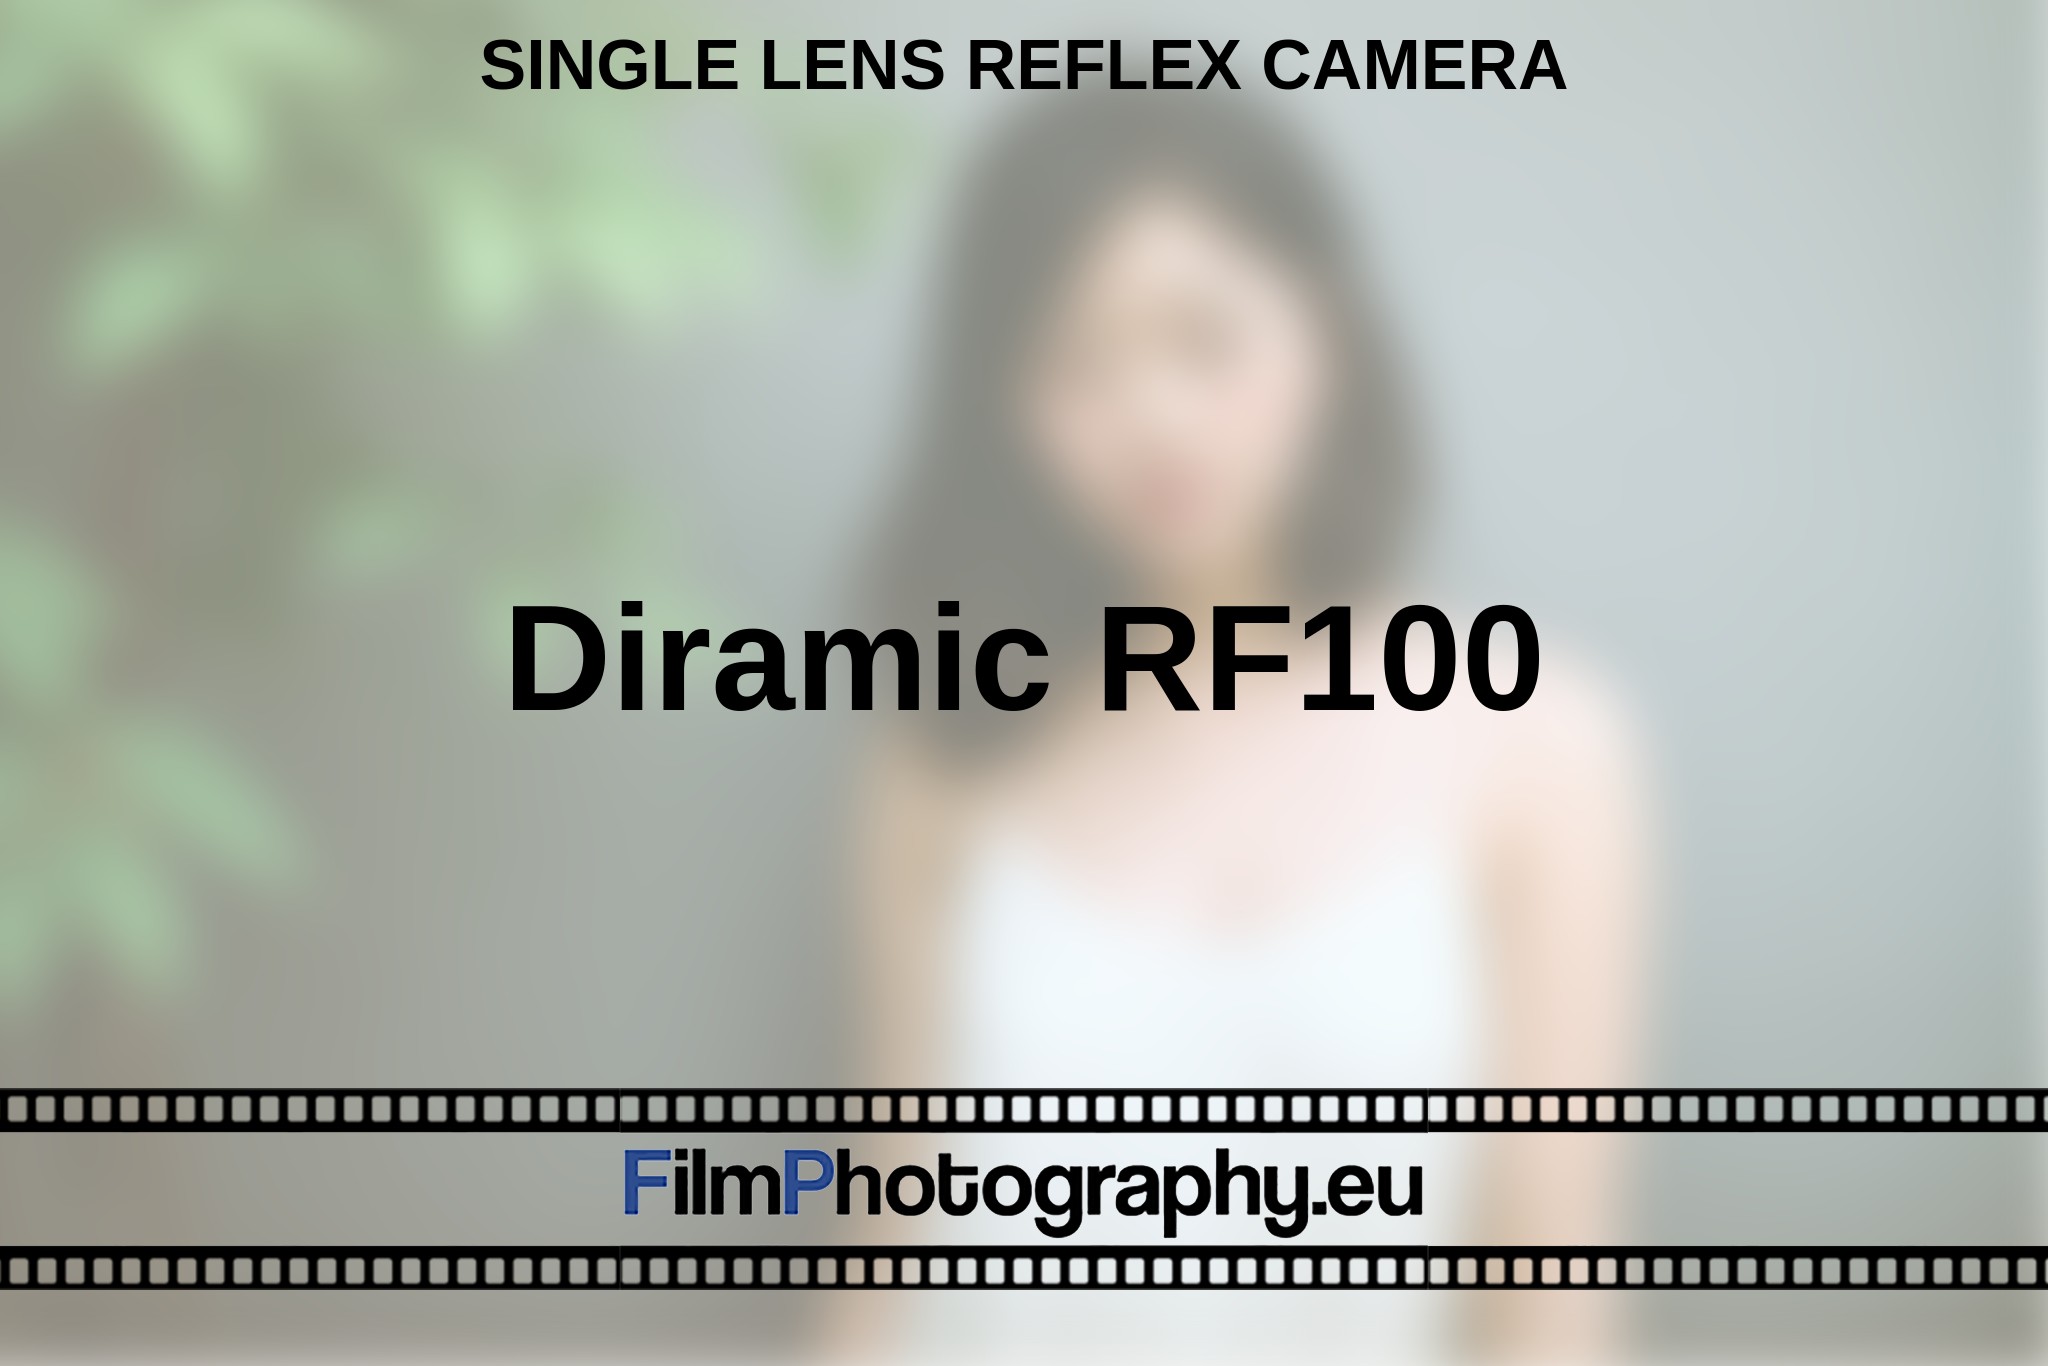 diramic-rf100-single-lens-reflex-camera-en-bnv.jpg